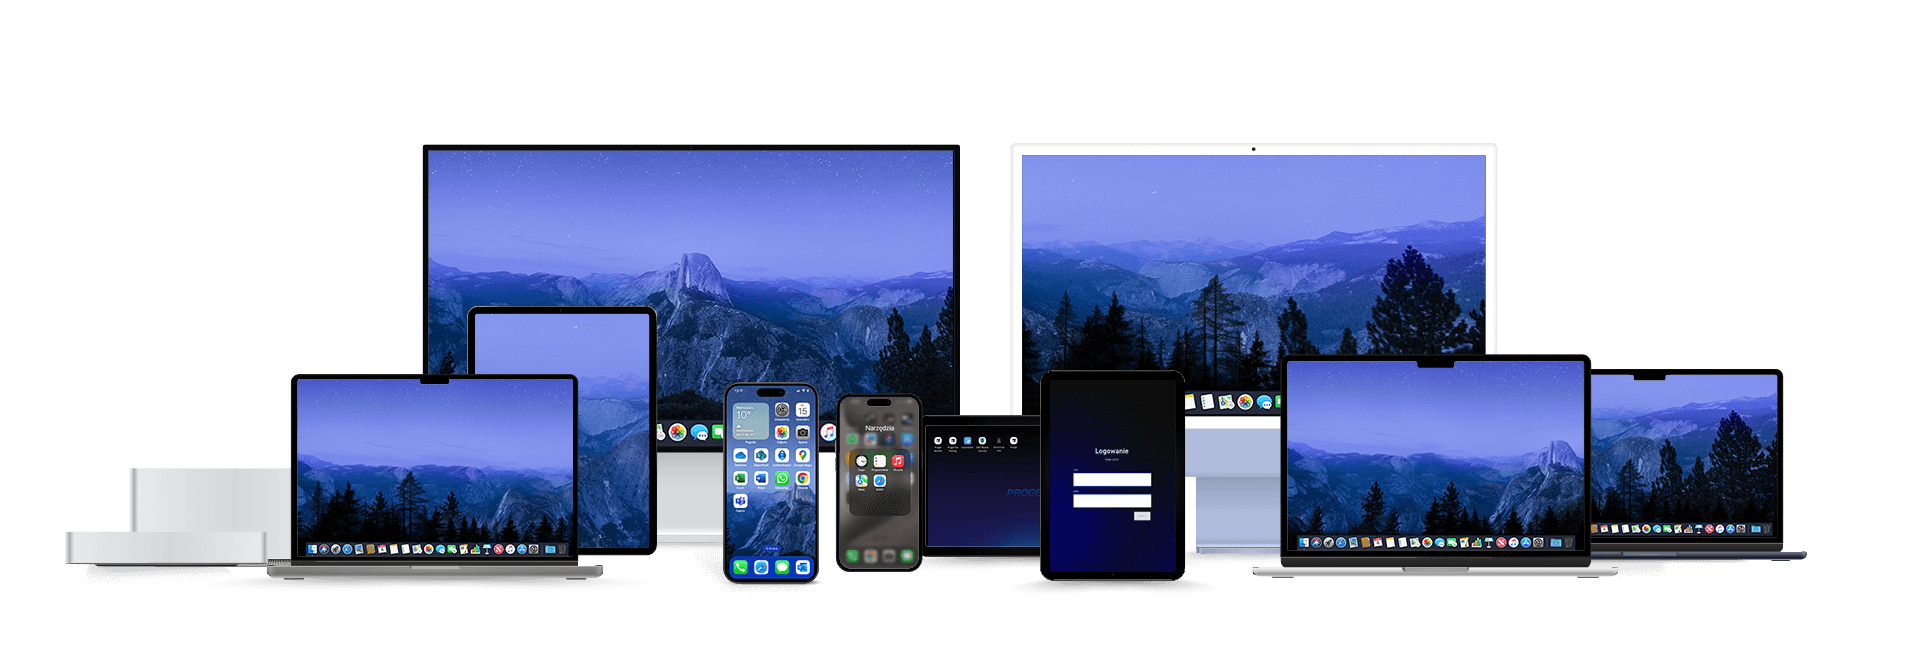 różne typy urządzeń firmy Apple, widoki na ekrany główne z ikonami aplikacji